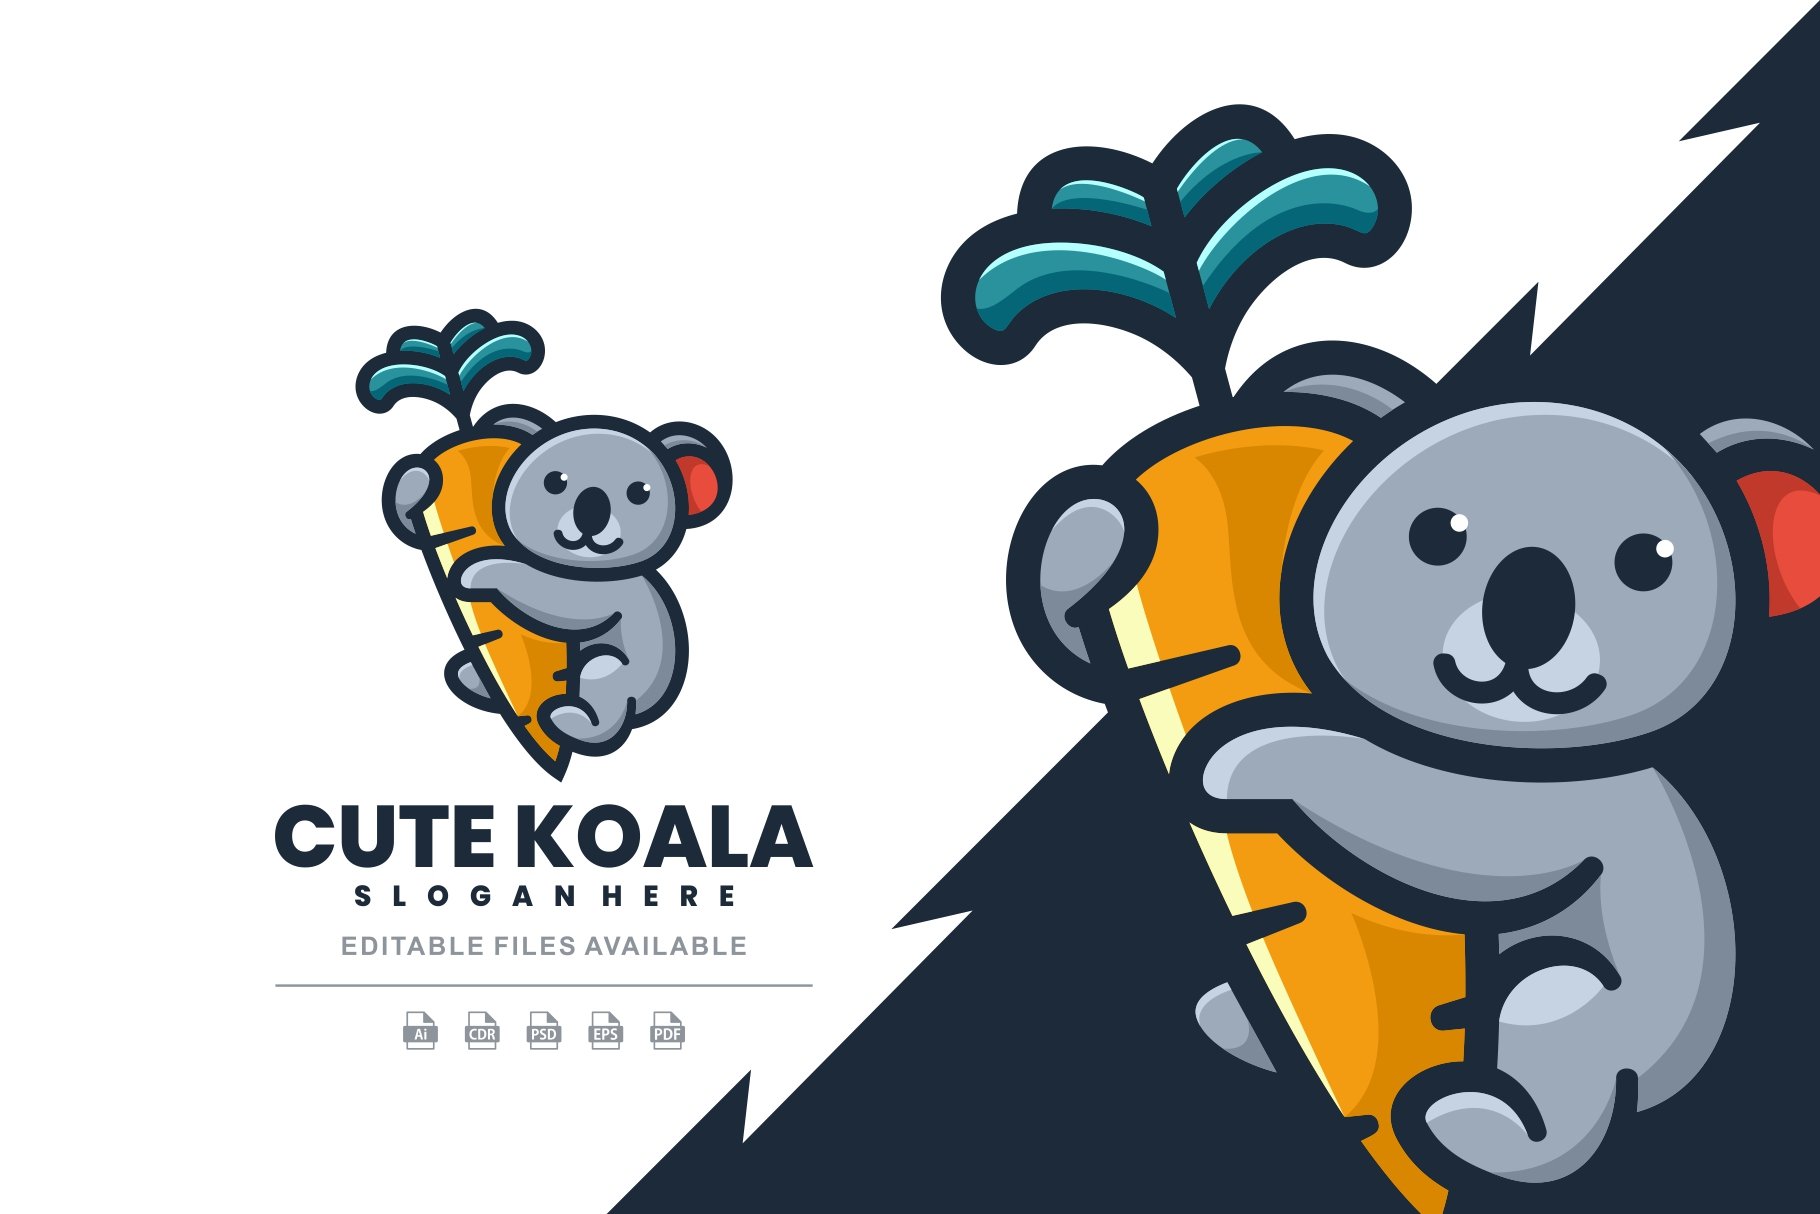 Cute Koala Simple Logo cover image.